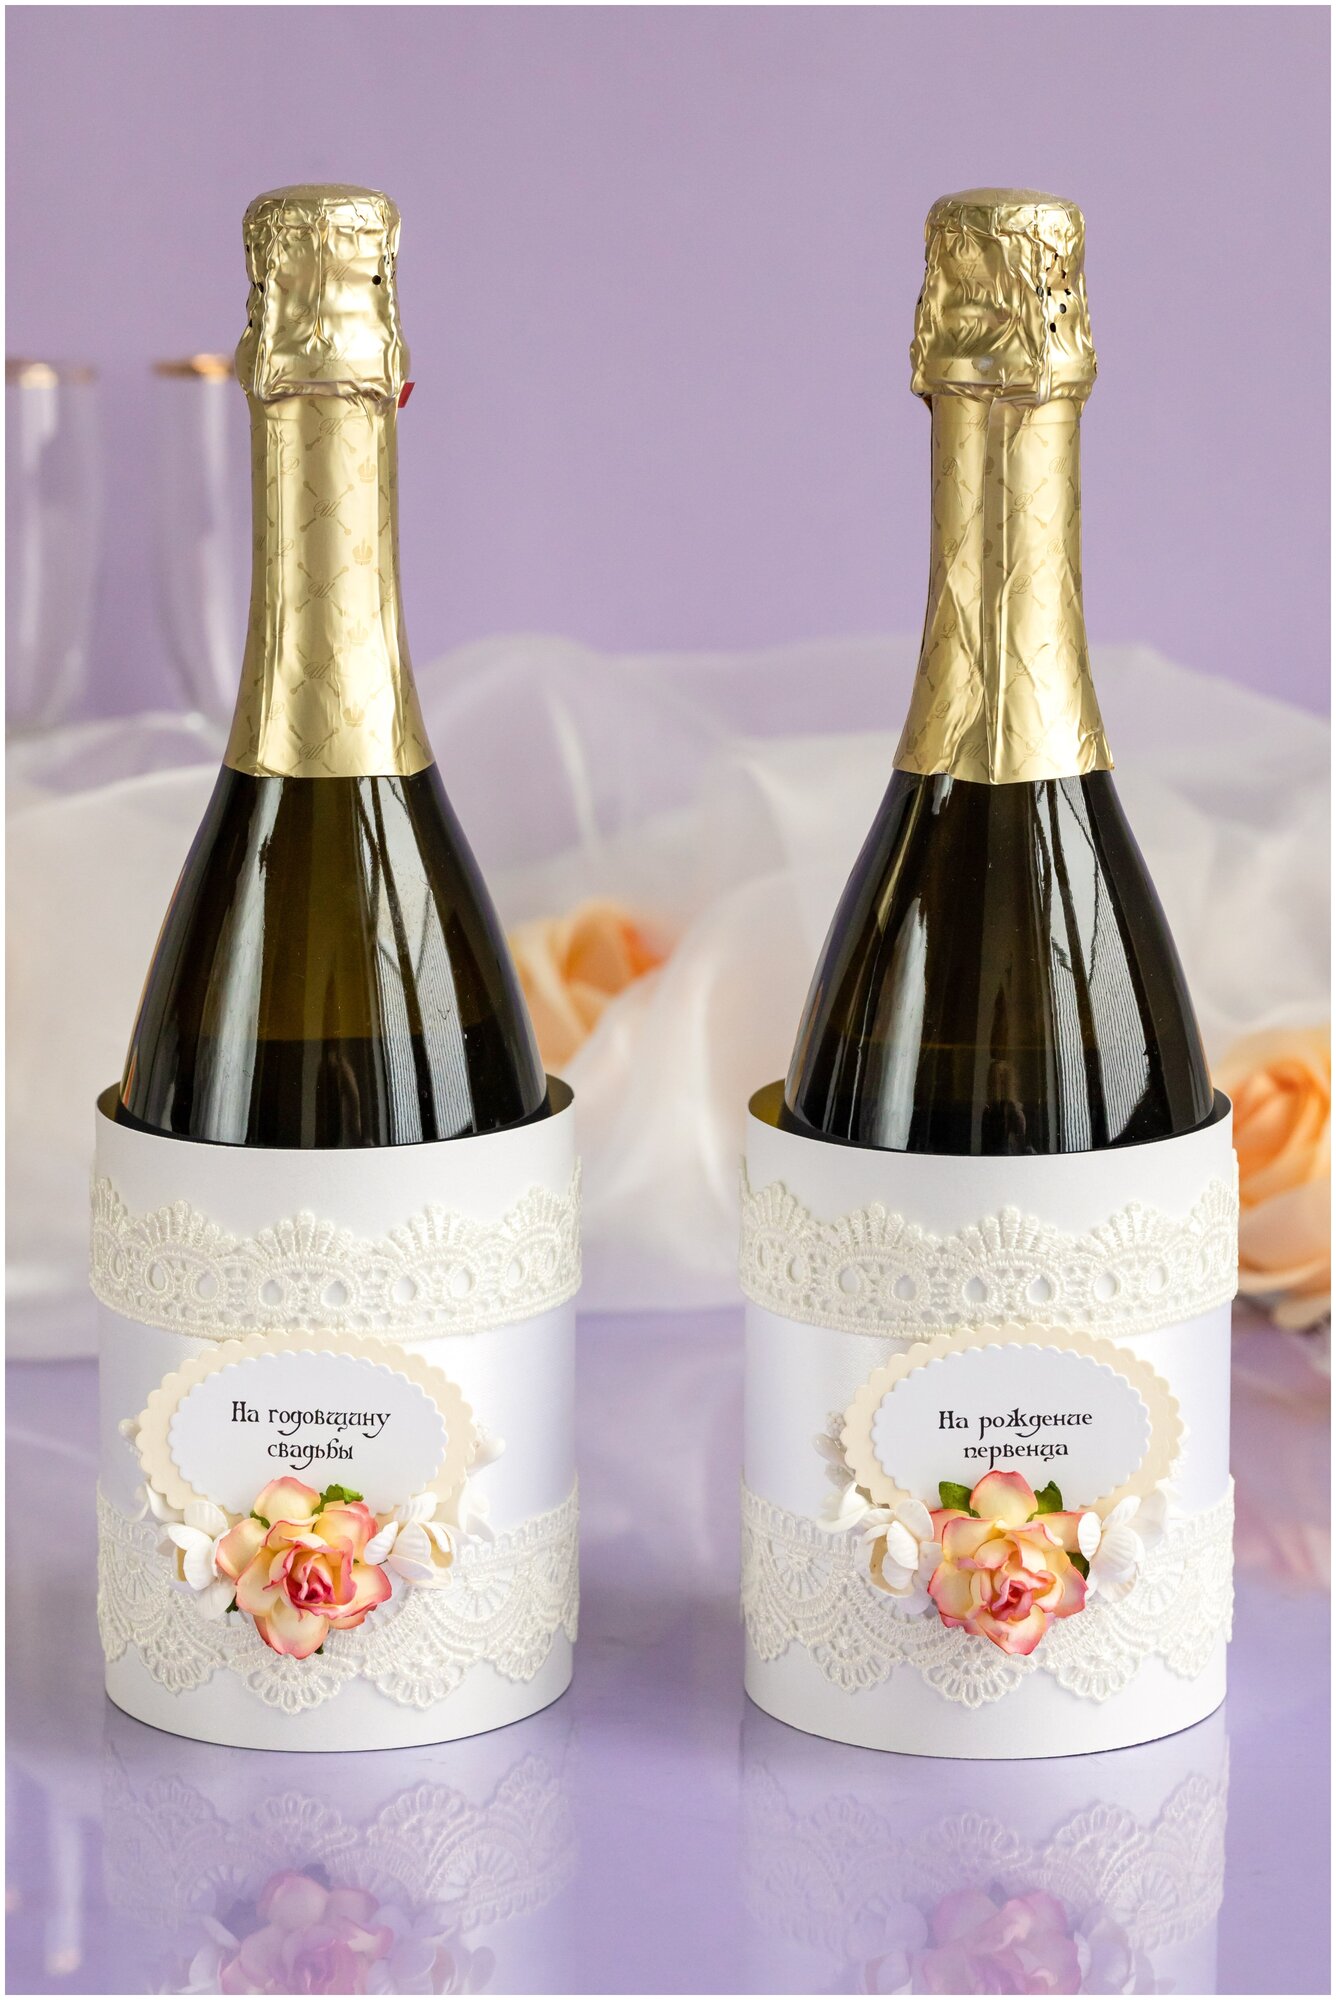 Свадебное украшение на шампанское "Ваниль" в виде тубуса с кружевом айвори и нежными цветами на годовщину свадьбы и рождение первенца, 2 штуки